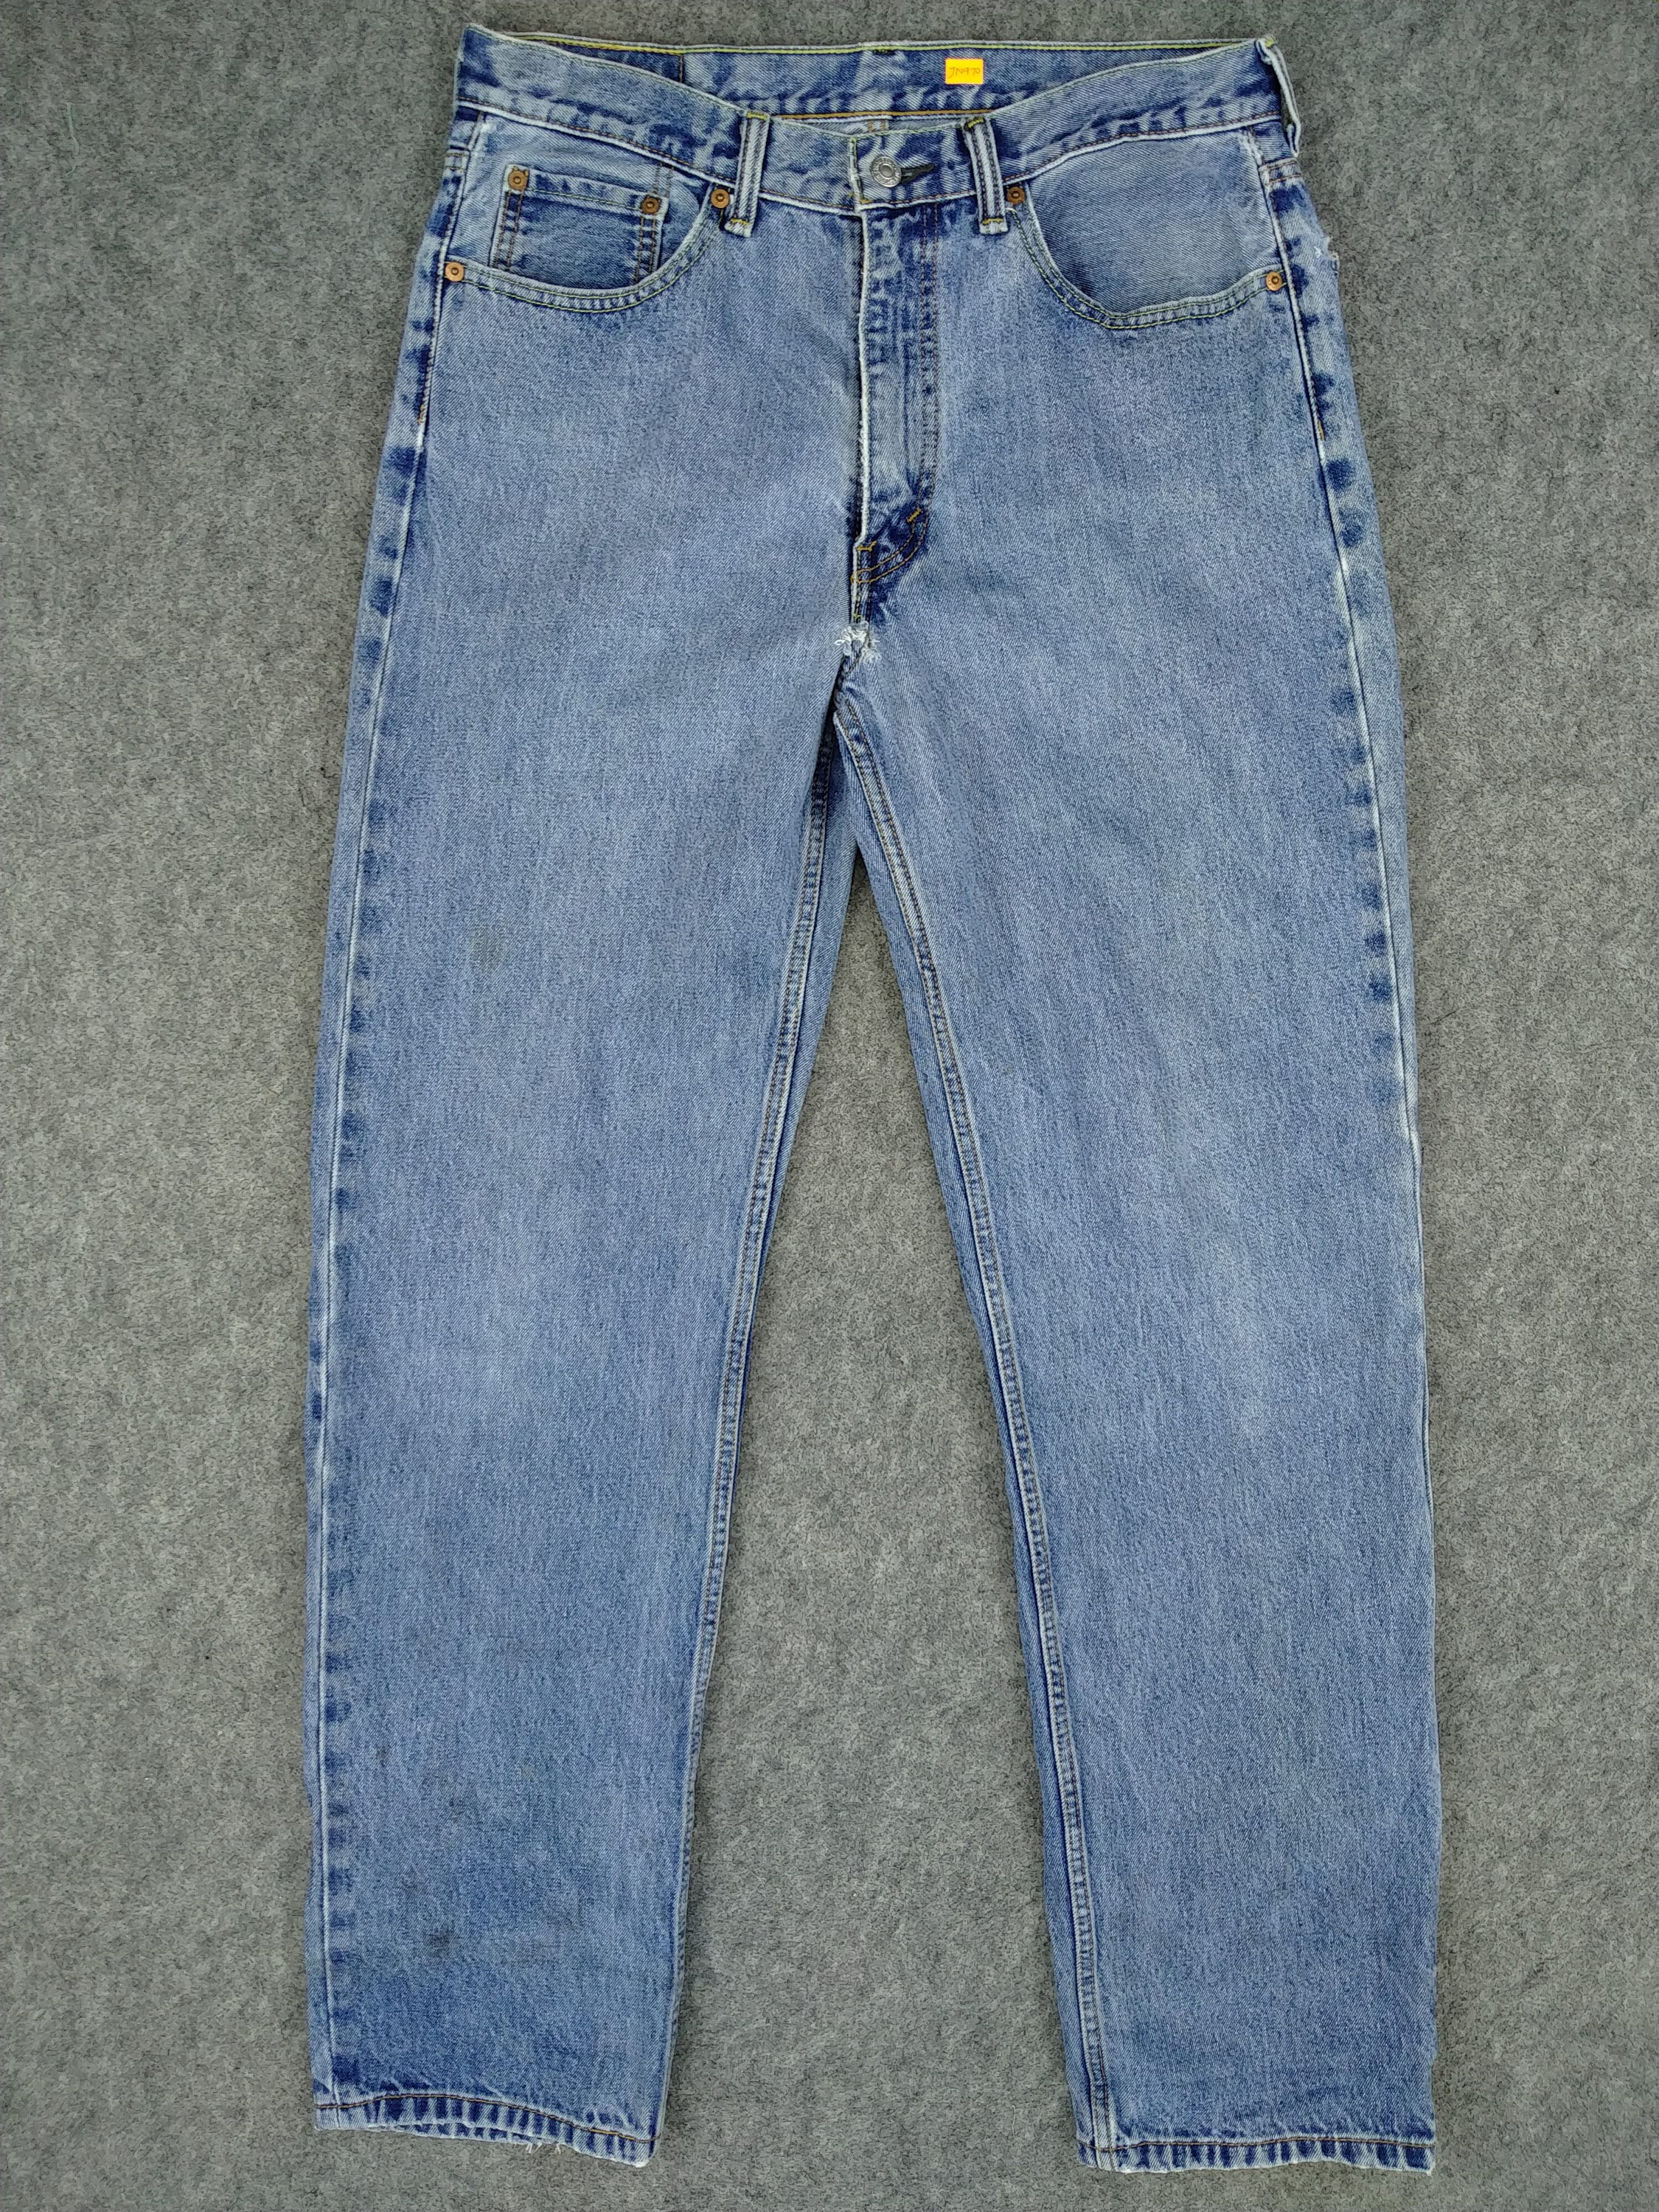 Vintage Levi's 550 Jeans 34x31 Light Wash Denim Red Tab Faded Denim Grunge Style Vintage Denim Unisex Jeans